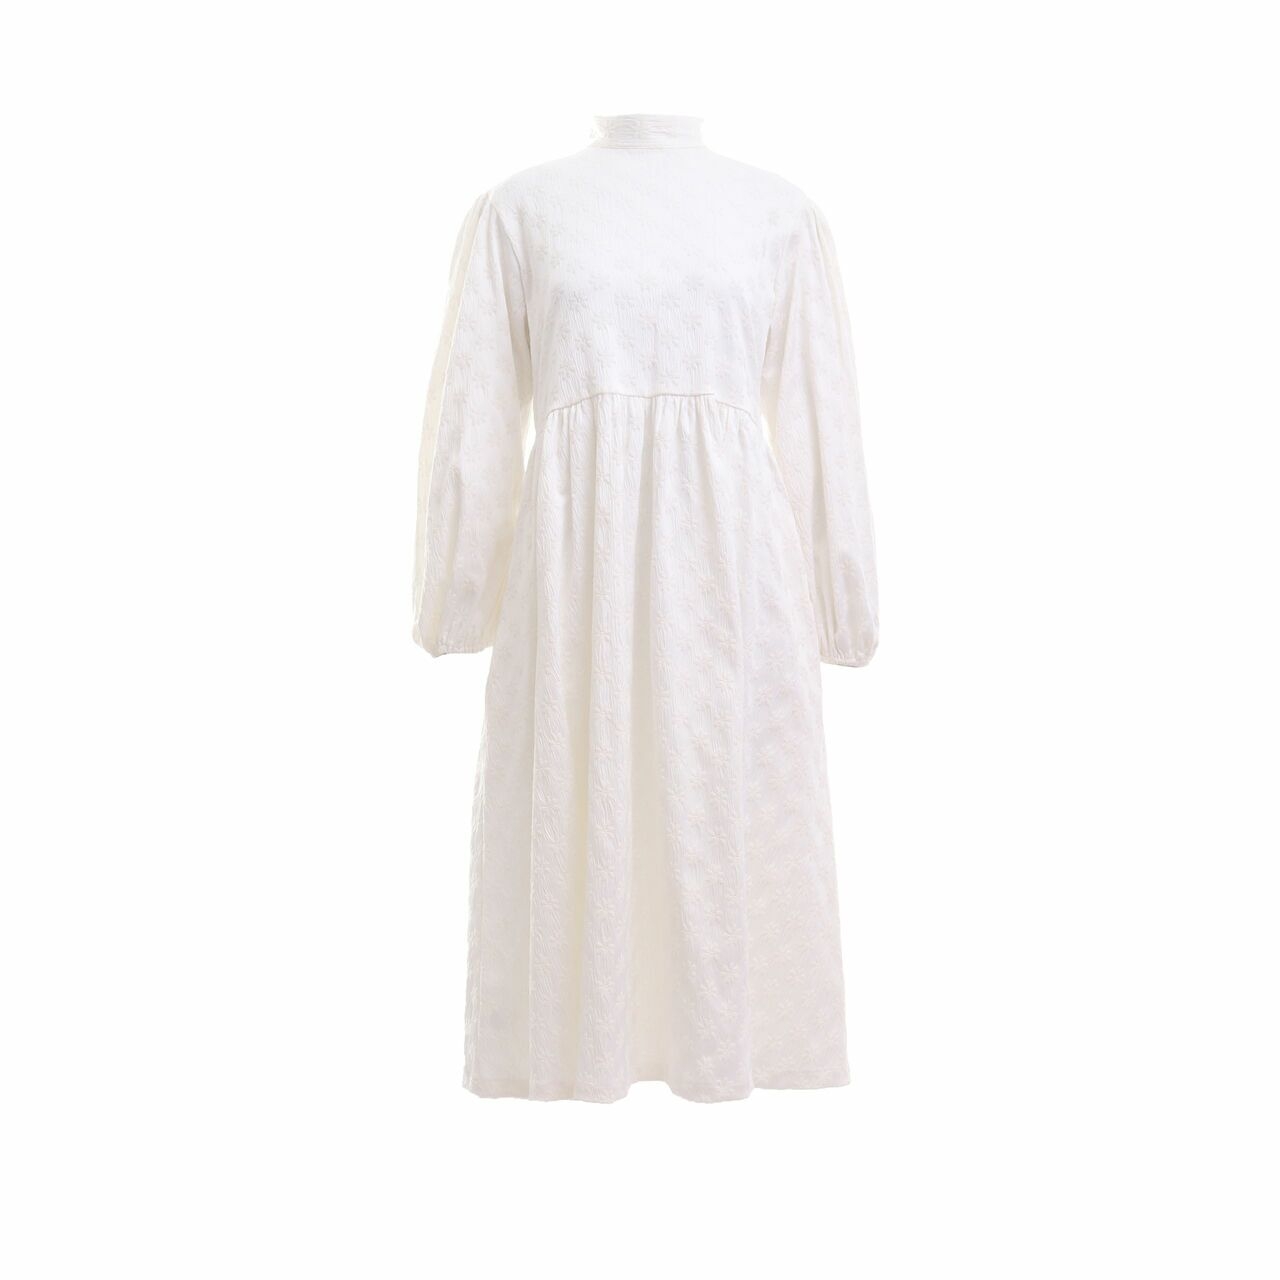 Studio Moral In Futura White Floral Embroidery Midi Dress	